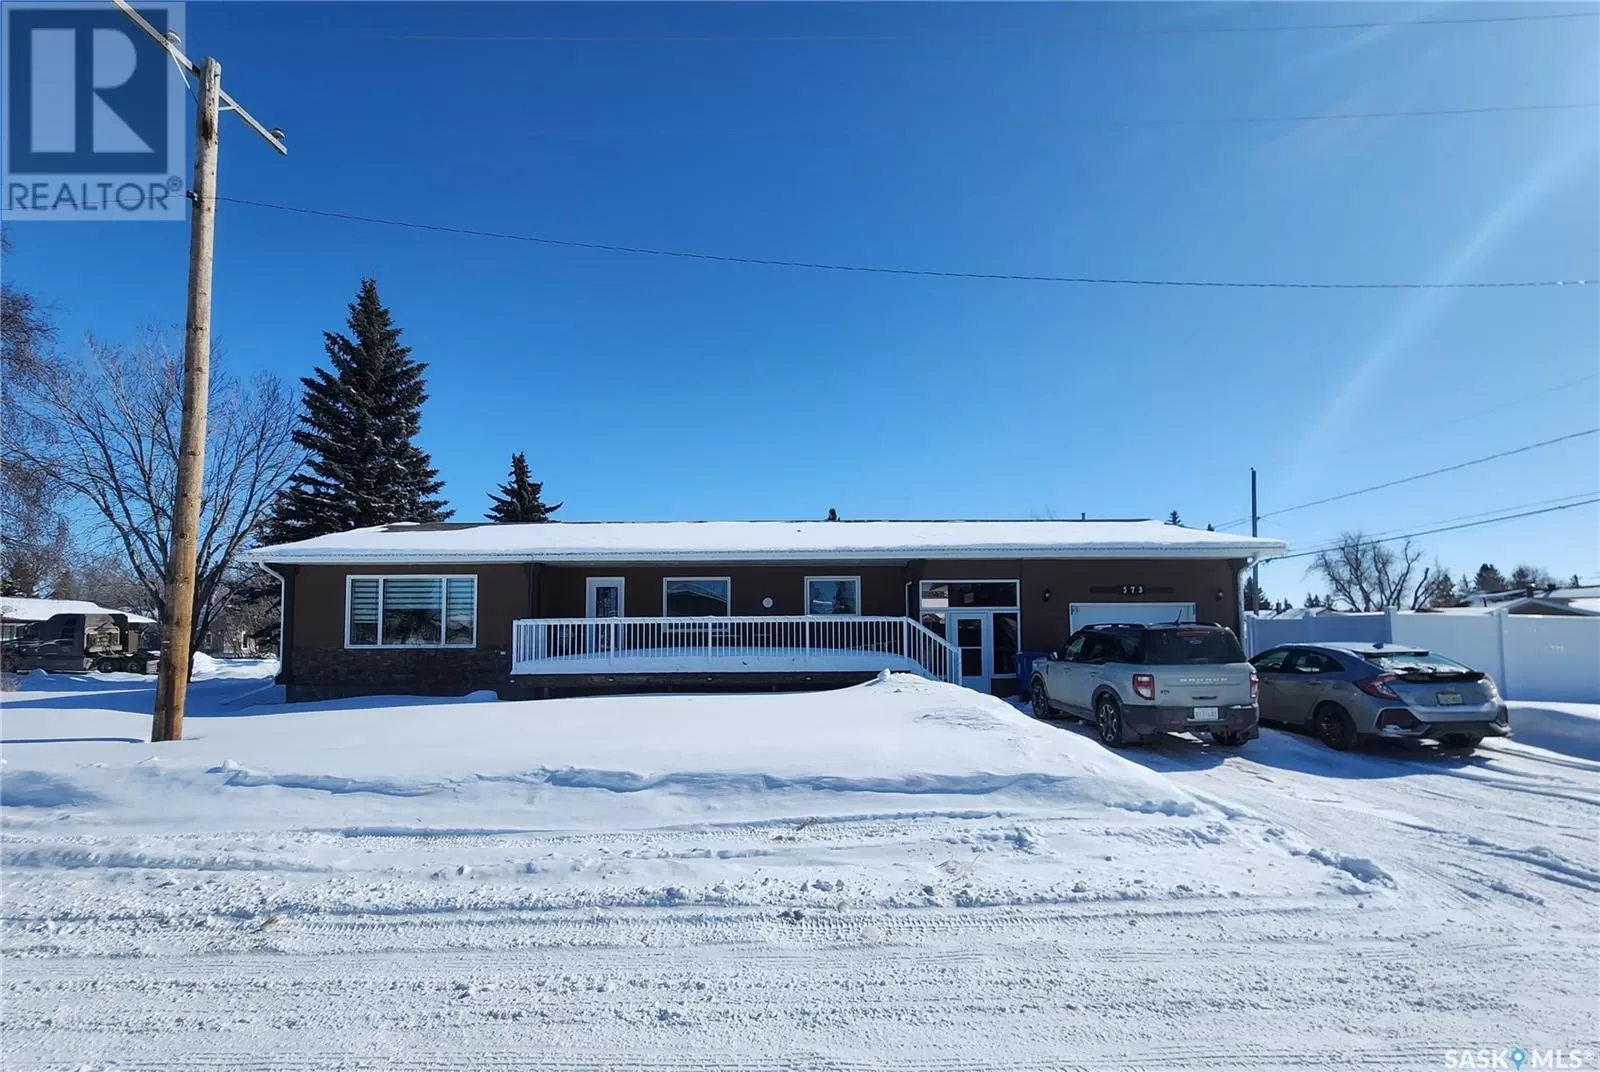 House for rent: 573 8th Avenue W, Melville, Saskatchewan S0A 2P0